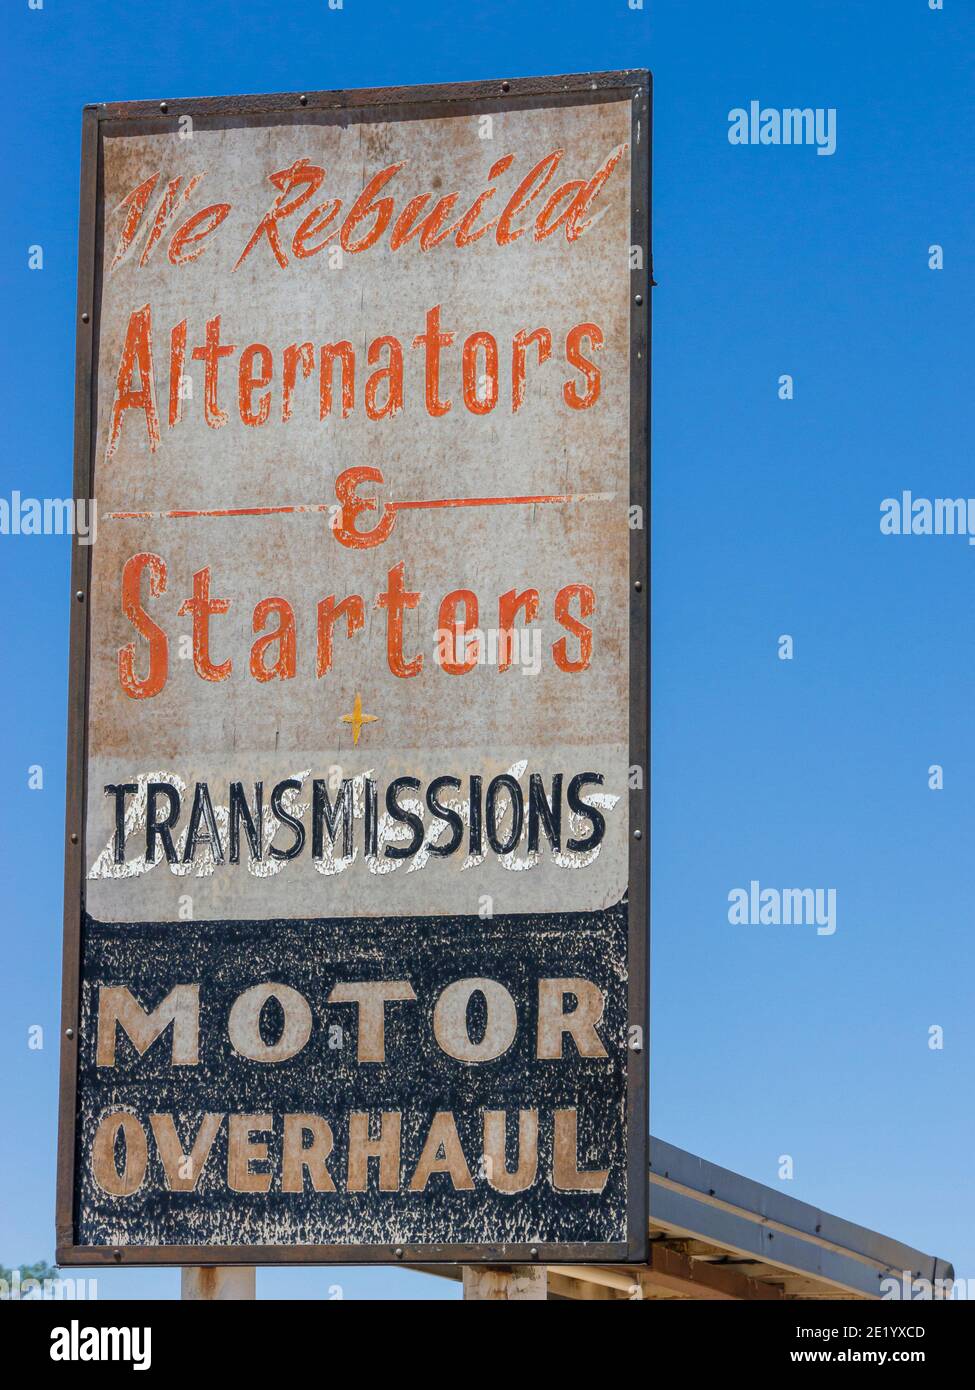 Un panneau indiquant « We Rebuild Alternators & démarreurs + transmissions, Motor Overhaul » dans un garage sur la route historique 66 au Nouveau-Mexique. Banque D'Images